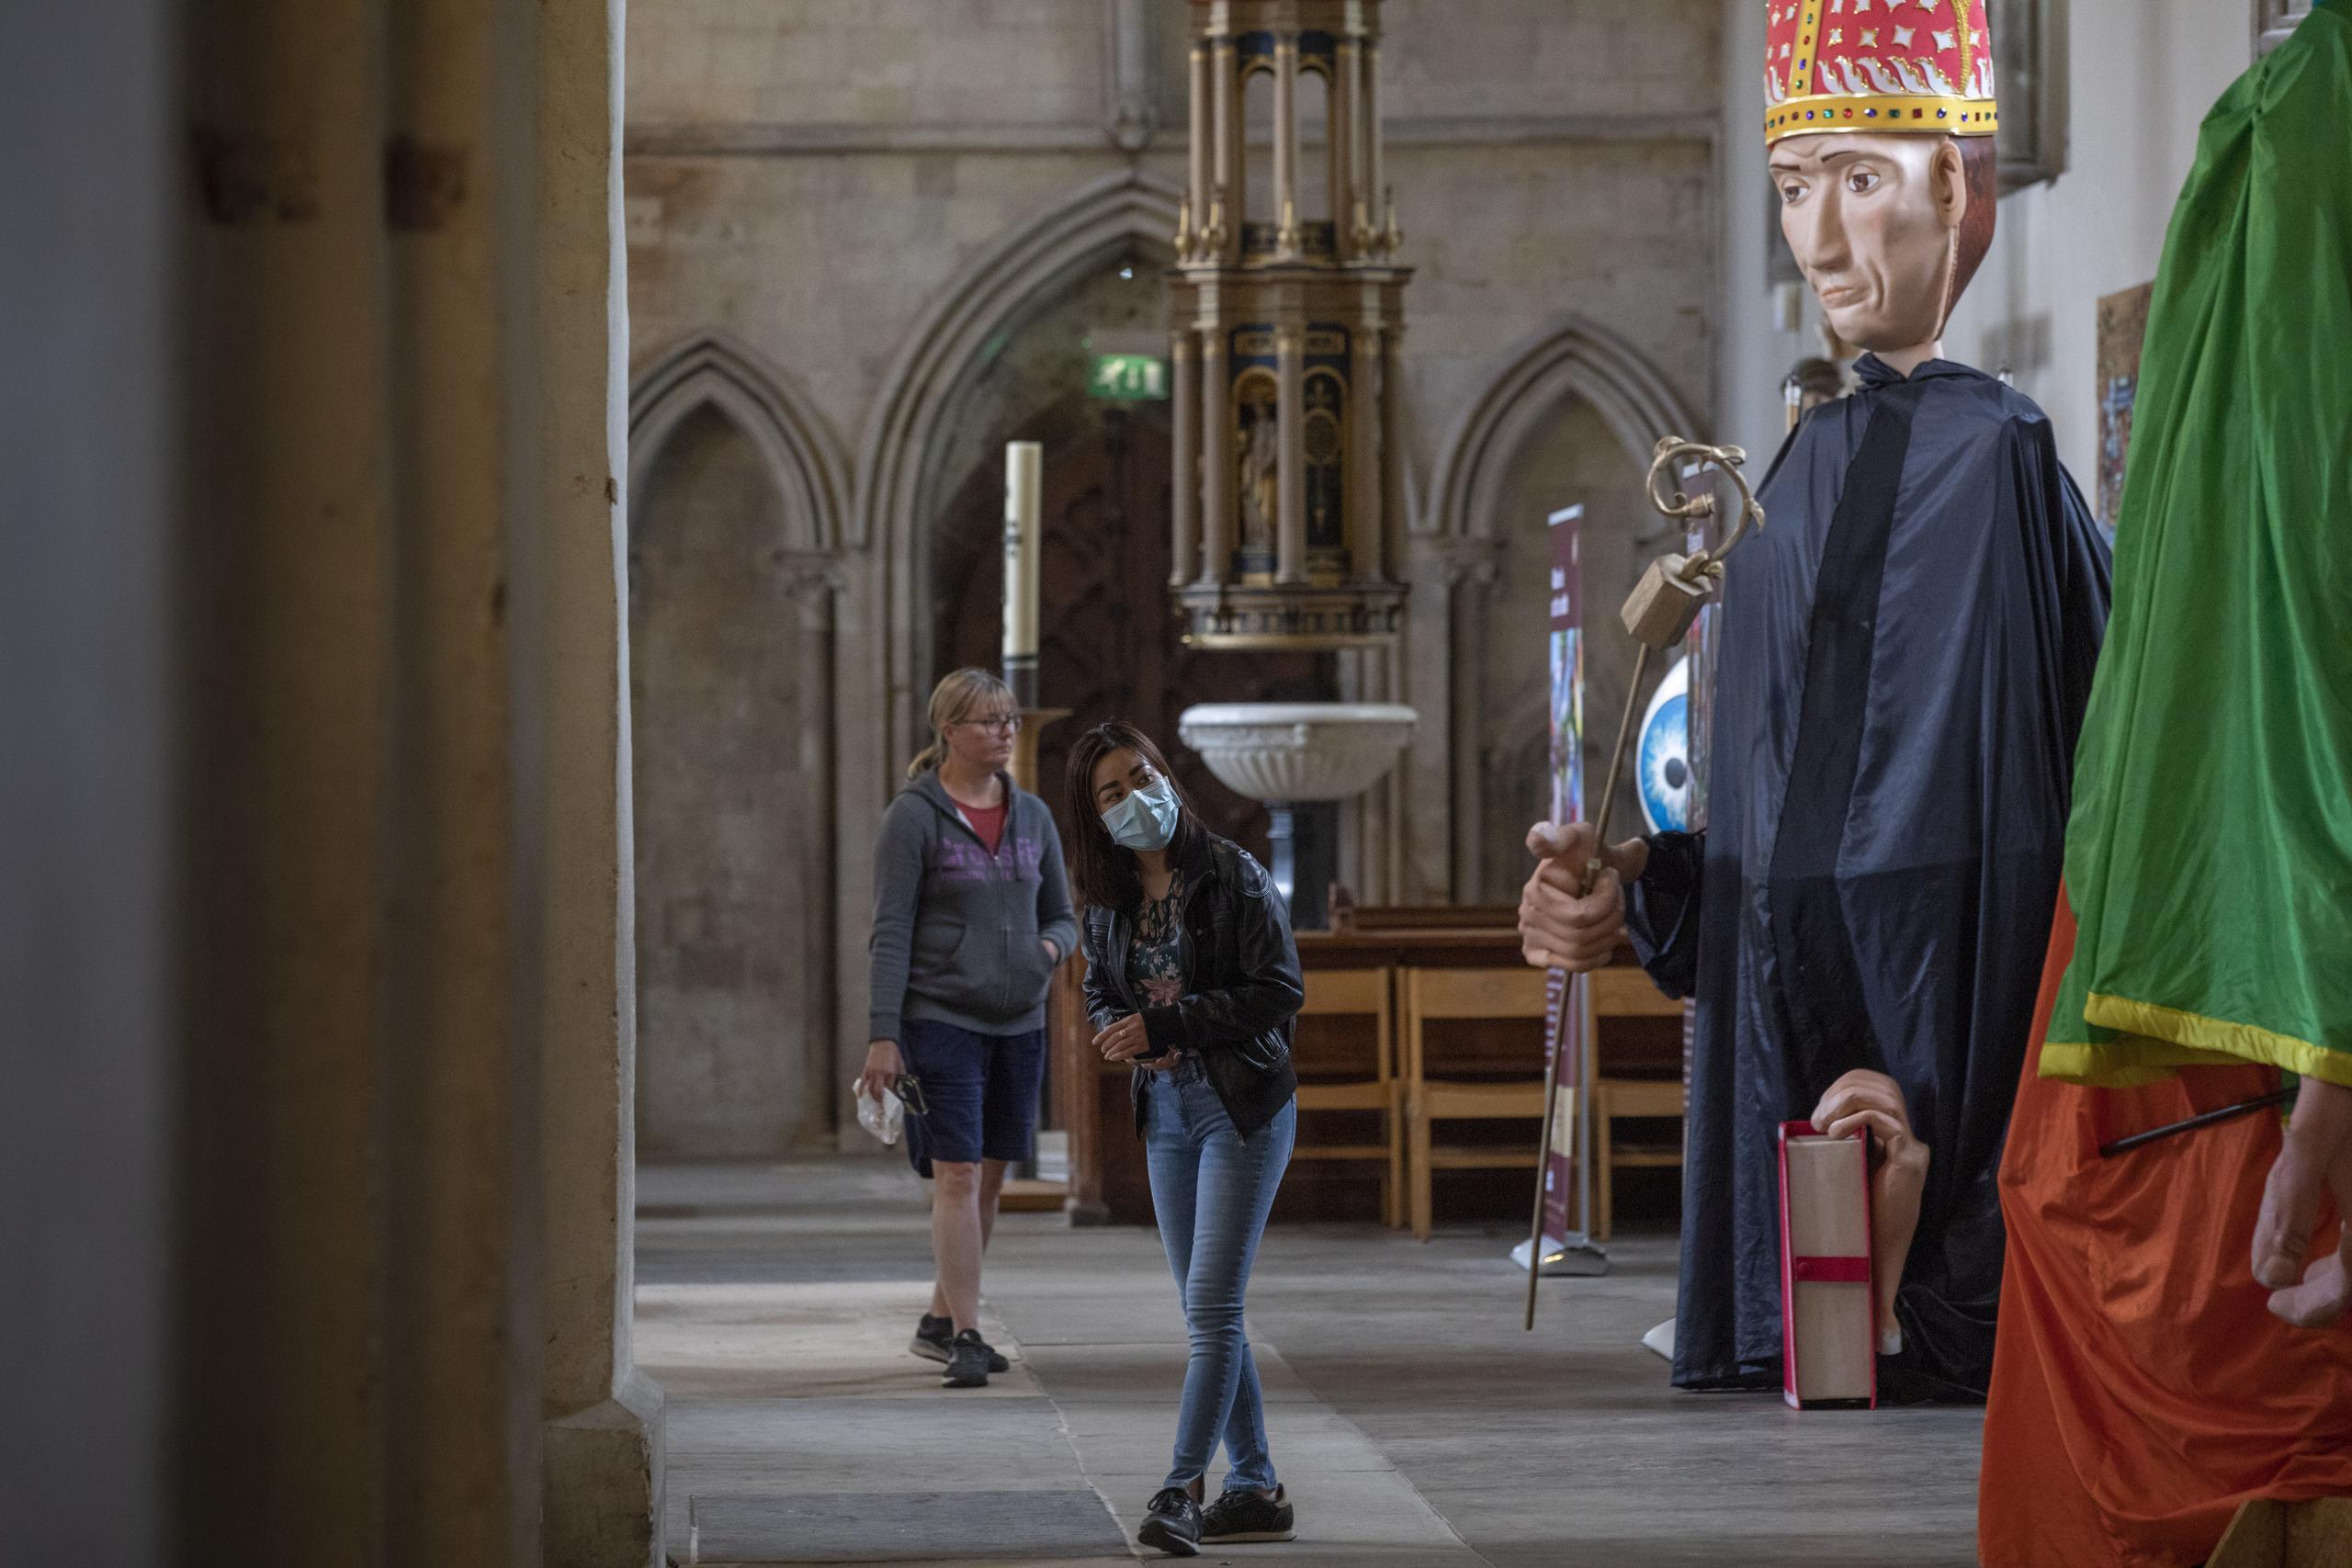 Gente contempla los títeres gigantes, parte de una peregrinación anual que la pandemia obligó a cancelar, en la catedral de St. Albans, Inglaterra